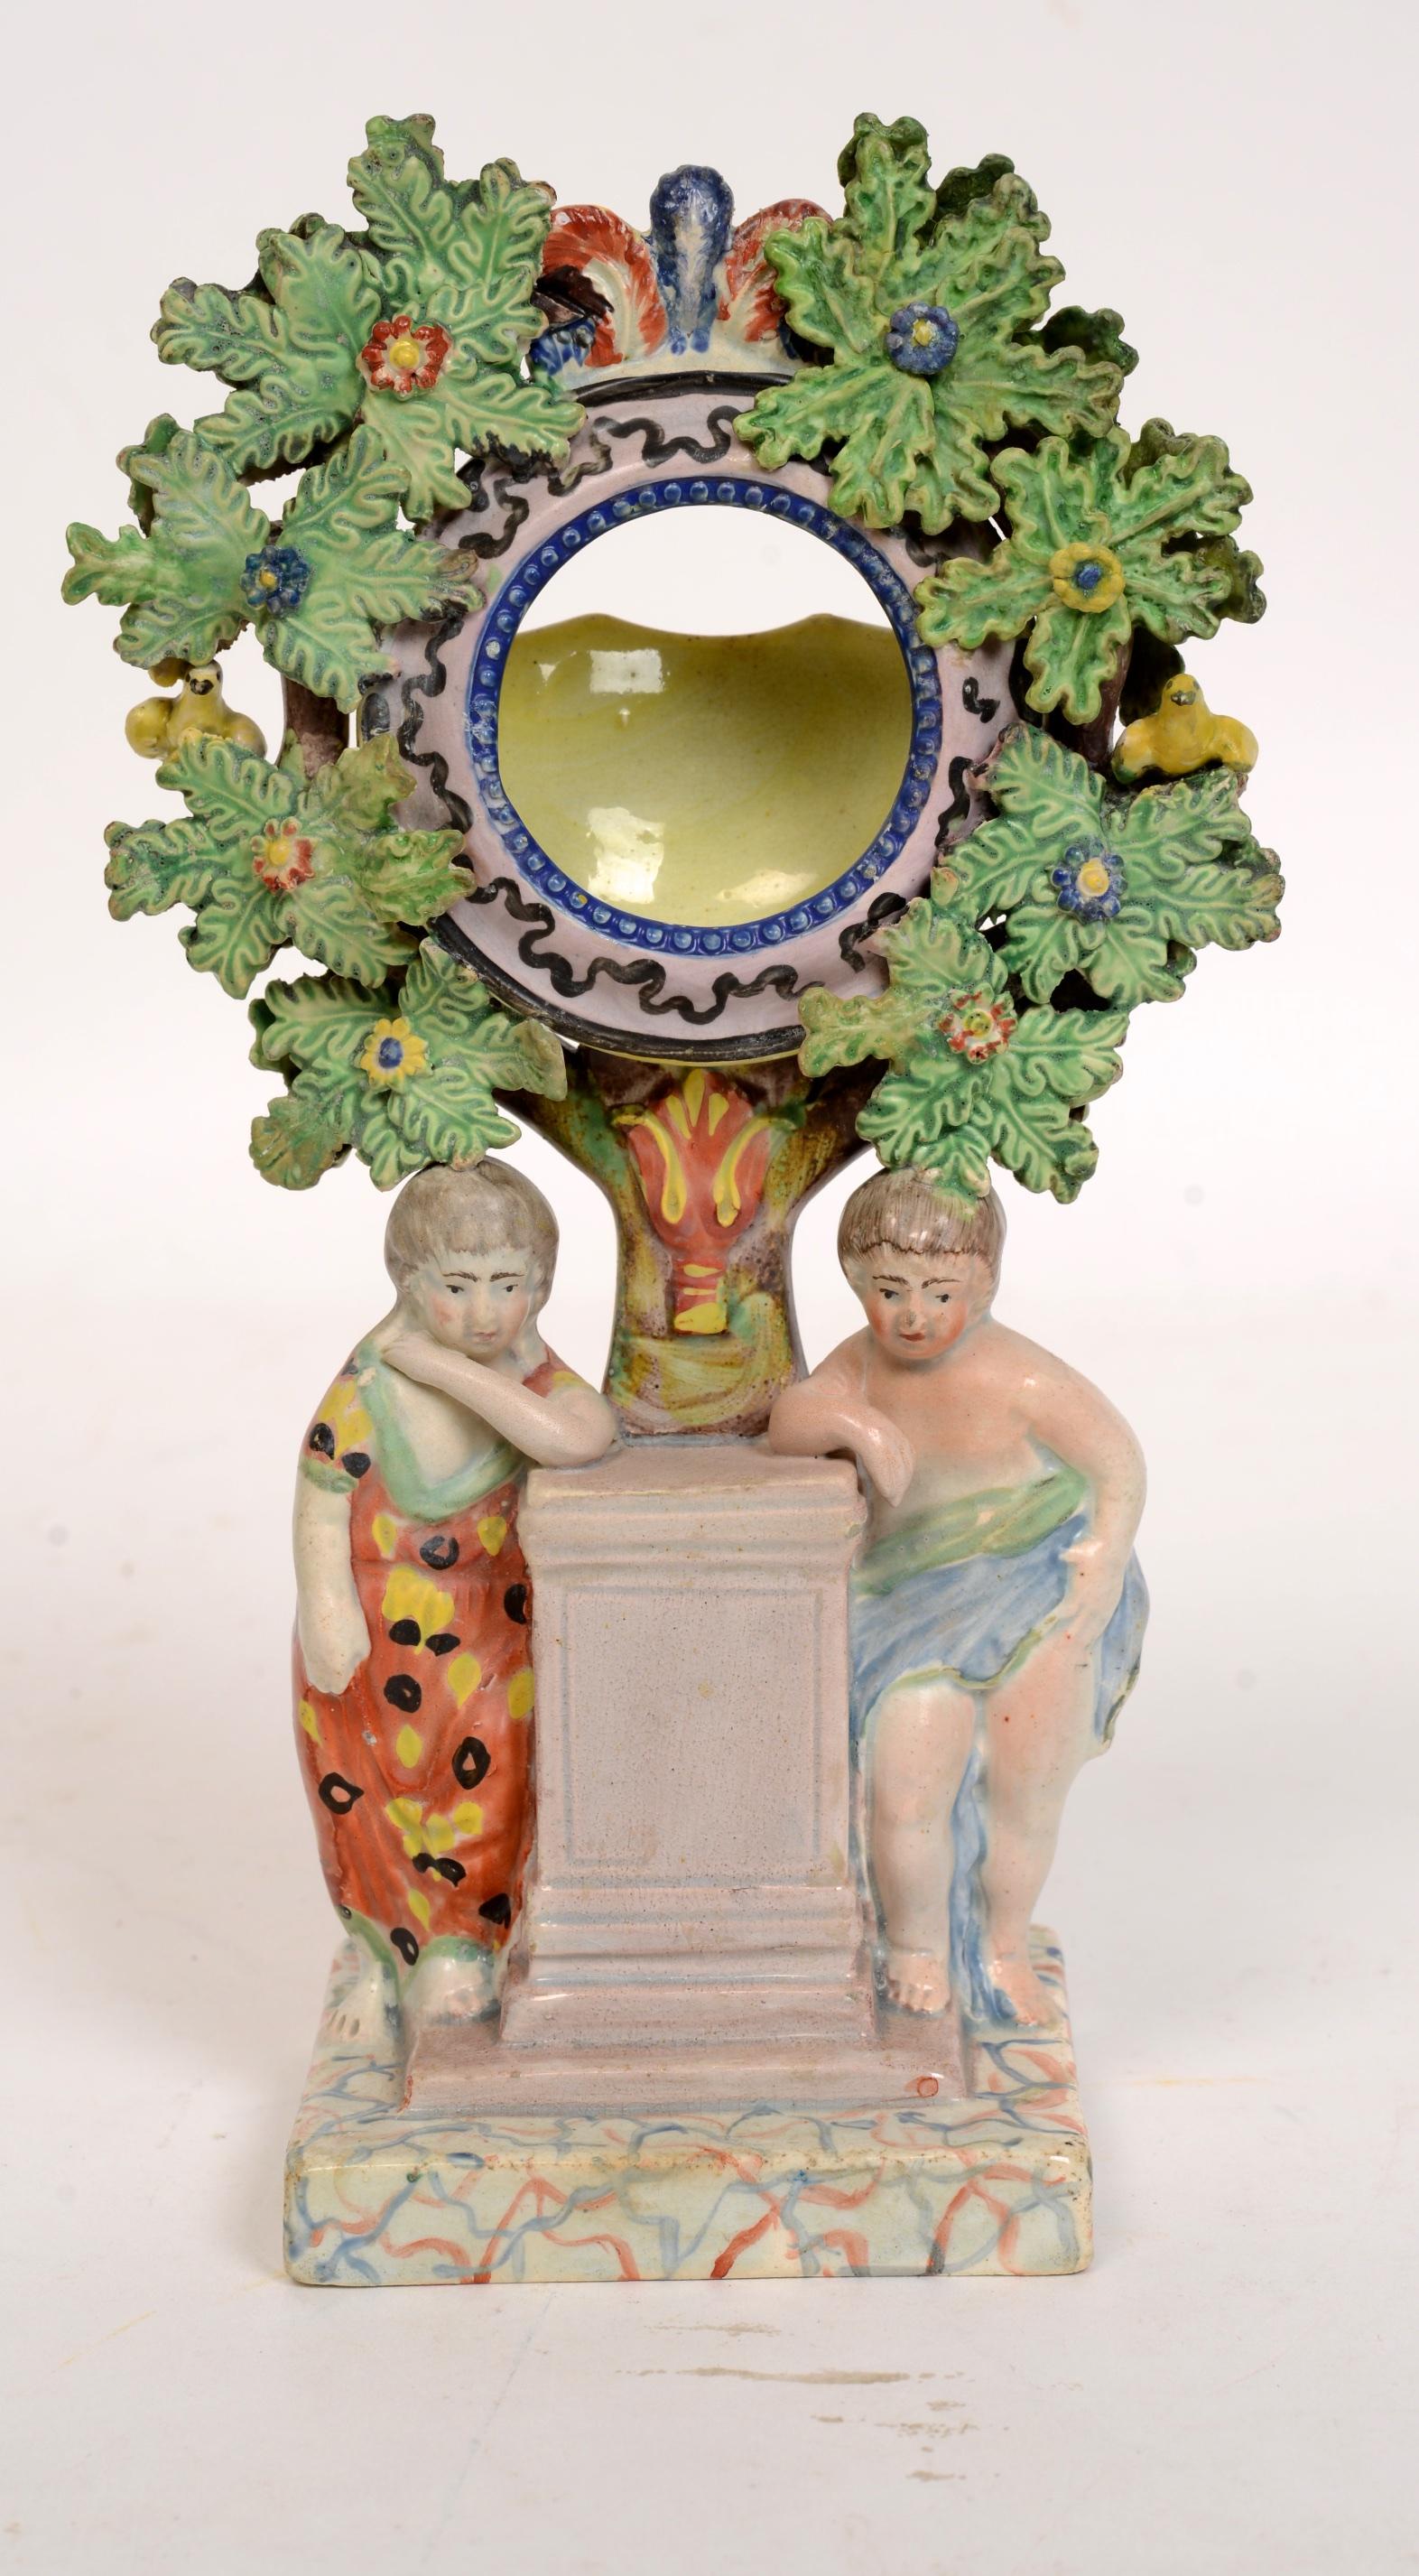 Porte-montre à figure en bocage de Staffordshire Pearlware, vers 1820. Il est décoré en ronde-bosse (à l'avant et à l'arrière). C'est un bel exemple de porte-montre en poterie perlée du Staffordshire avec deux chérubins flanquant un pilier, le